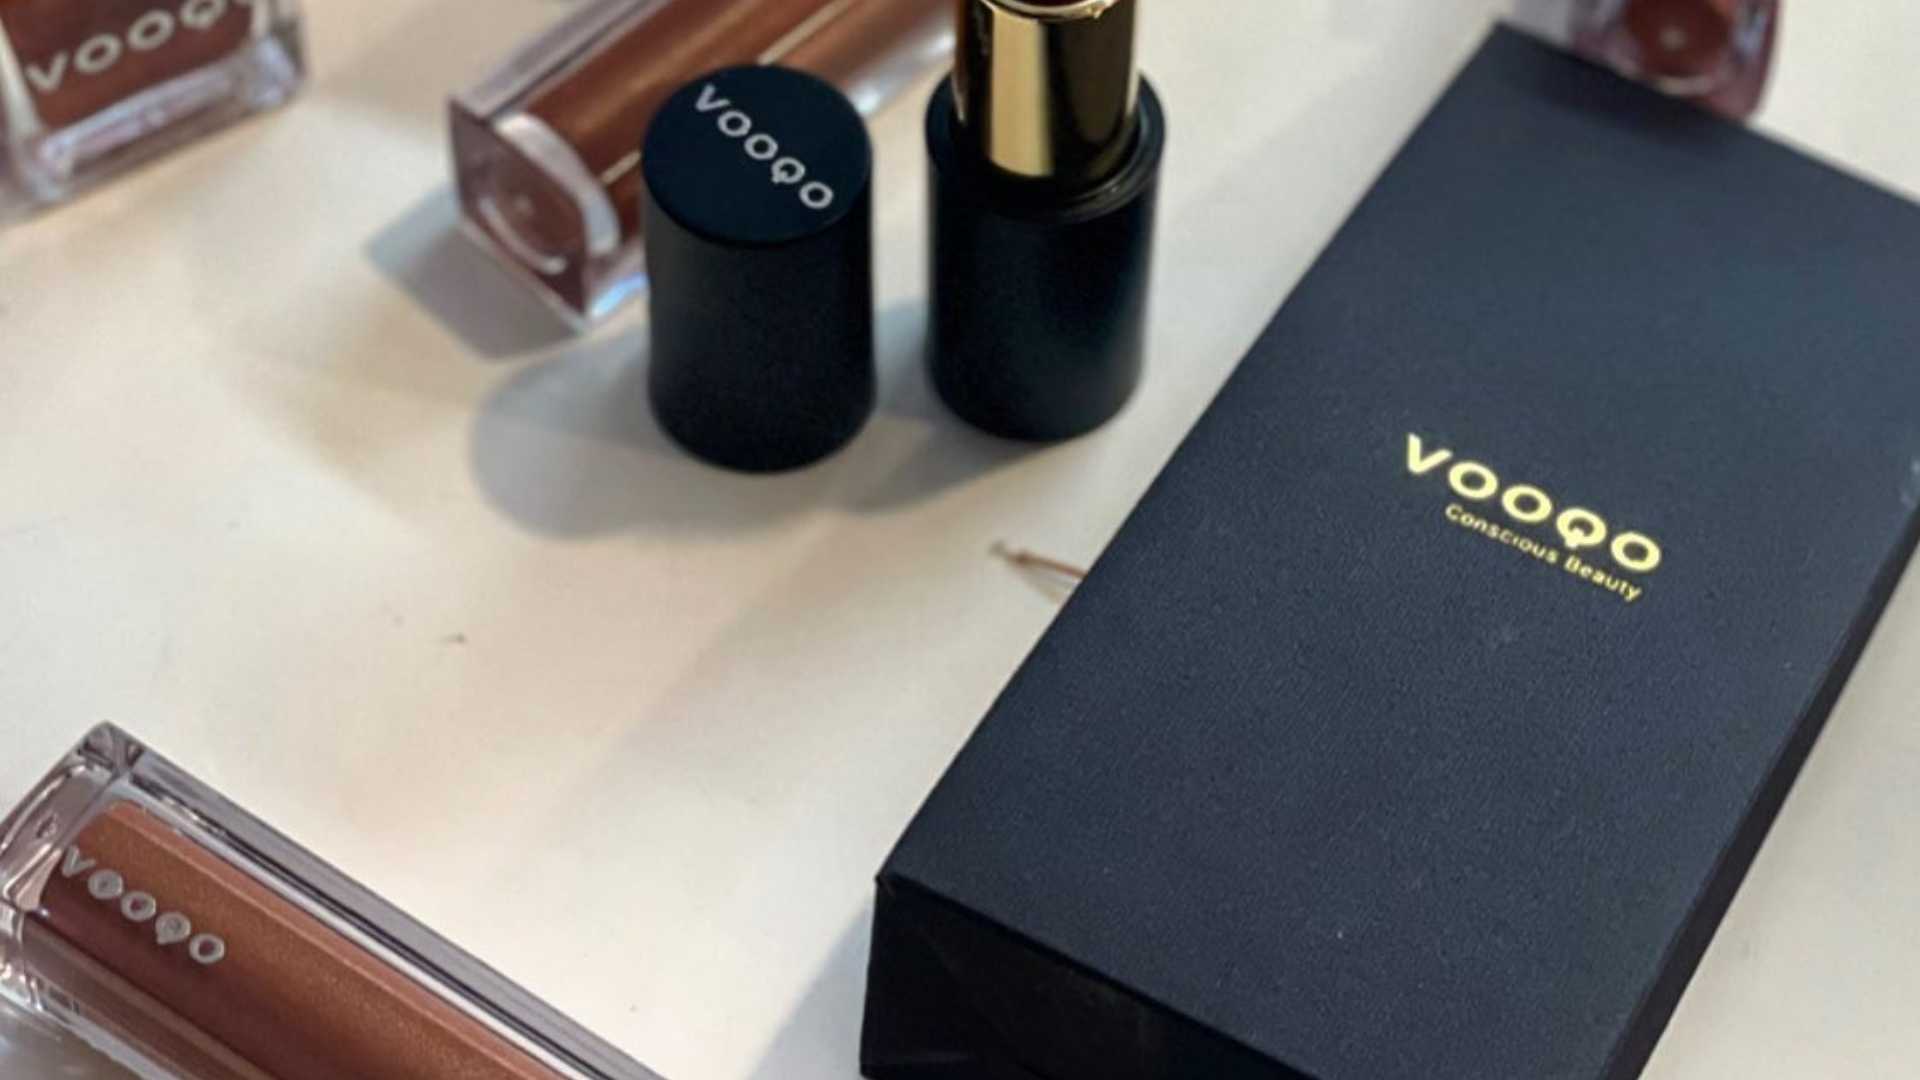 Vooqo Organic Makeup Brand